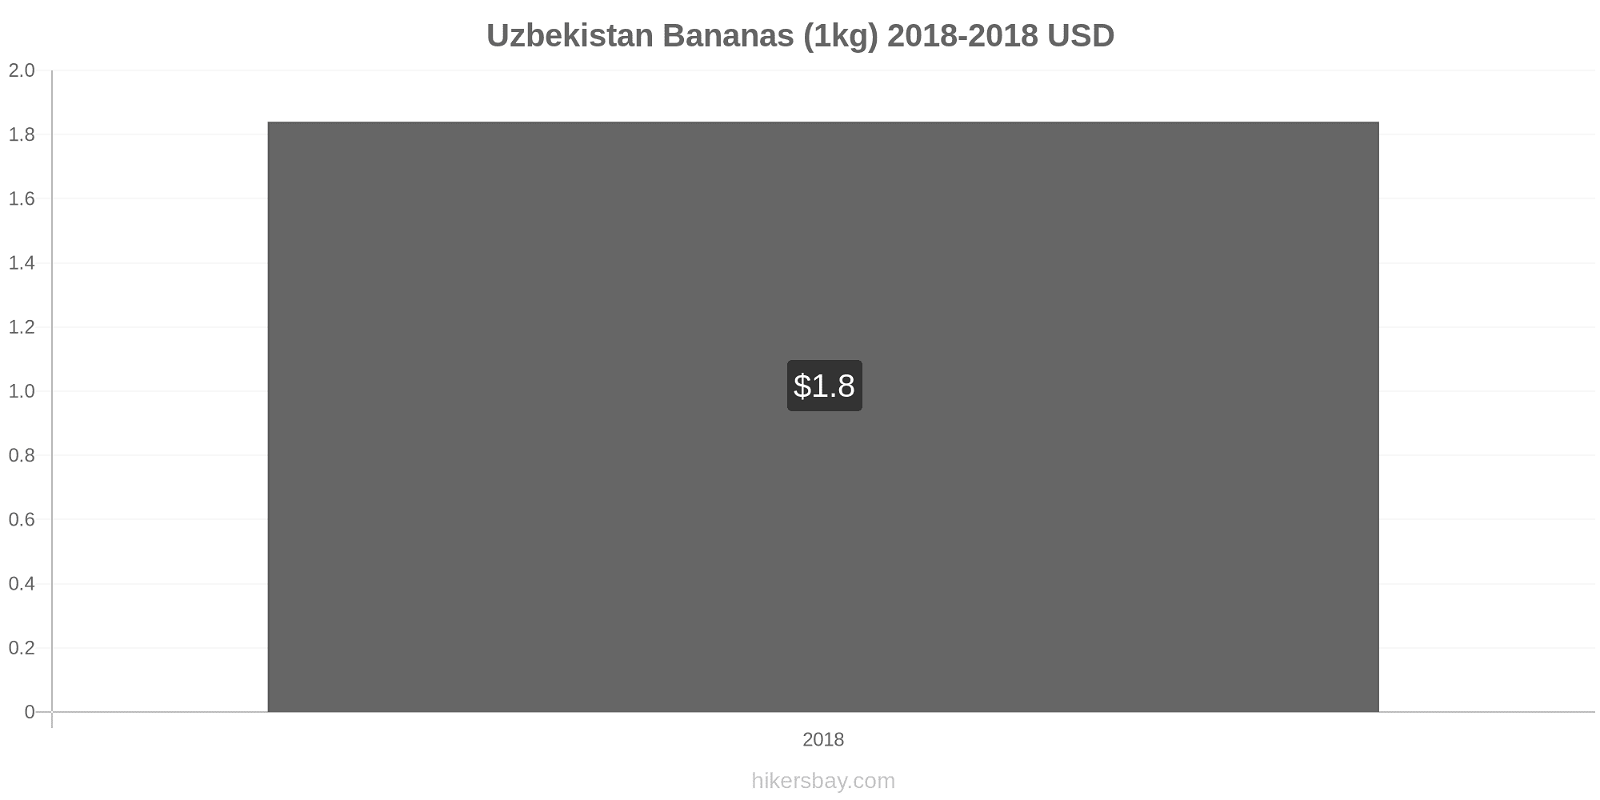 Uzbekistan price changes Bananas (1kg) hikersbay.com